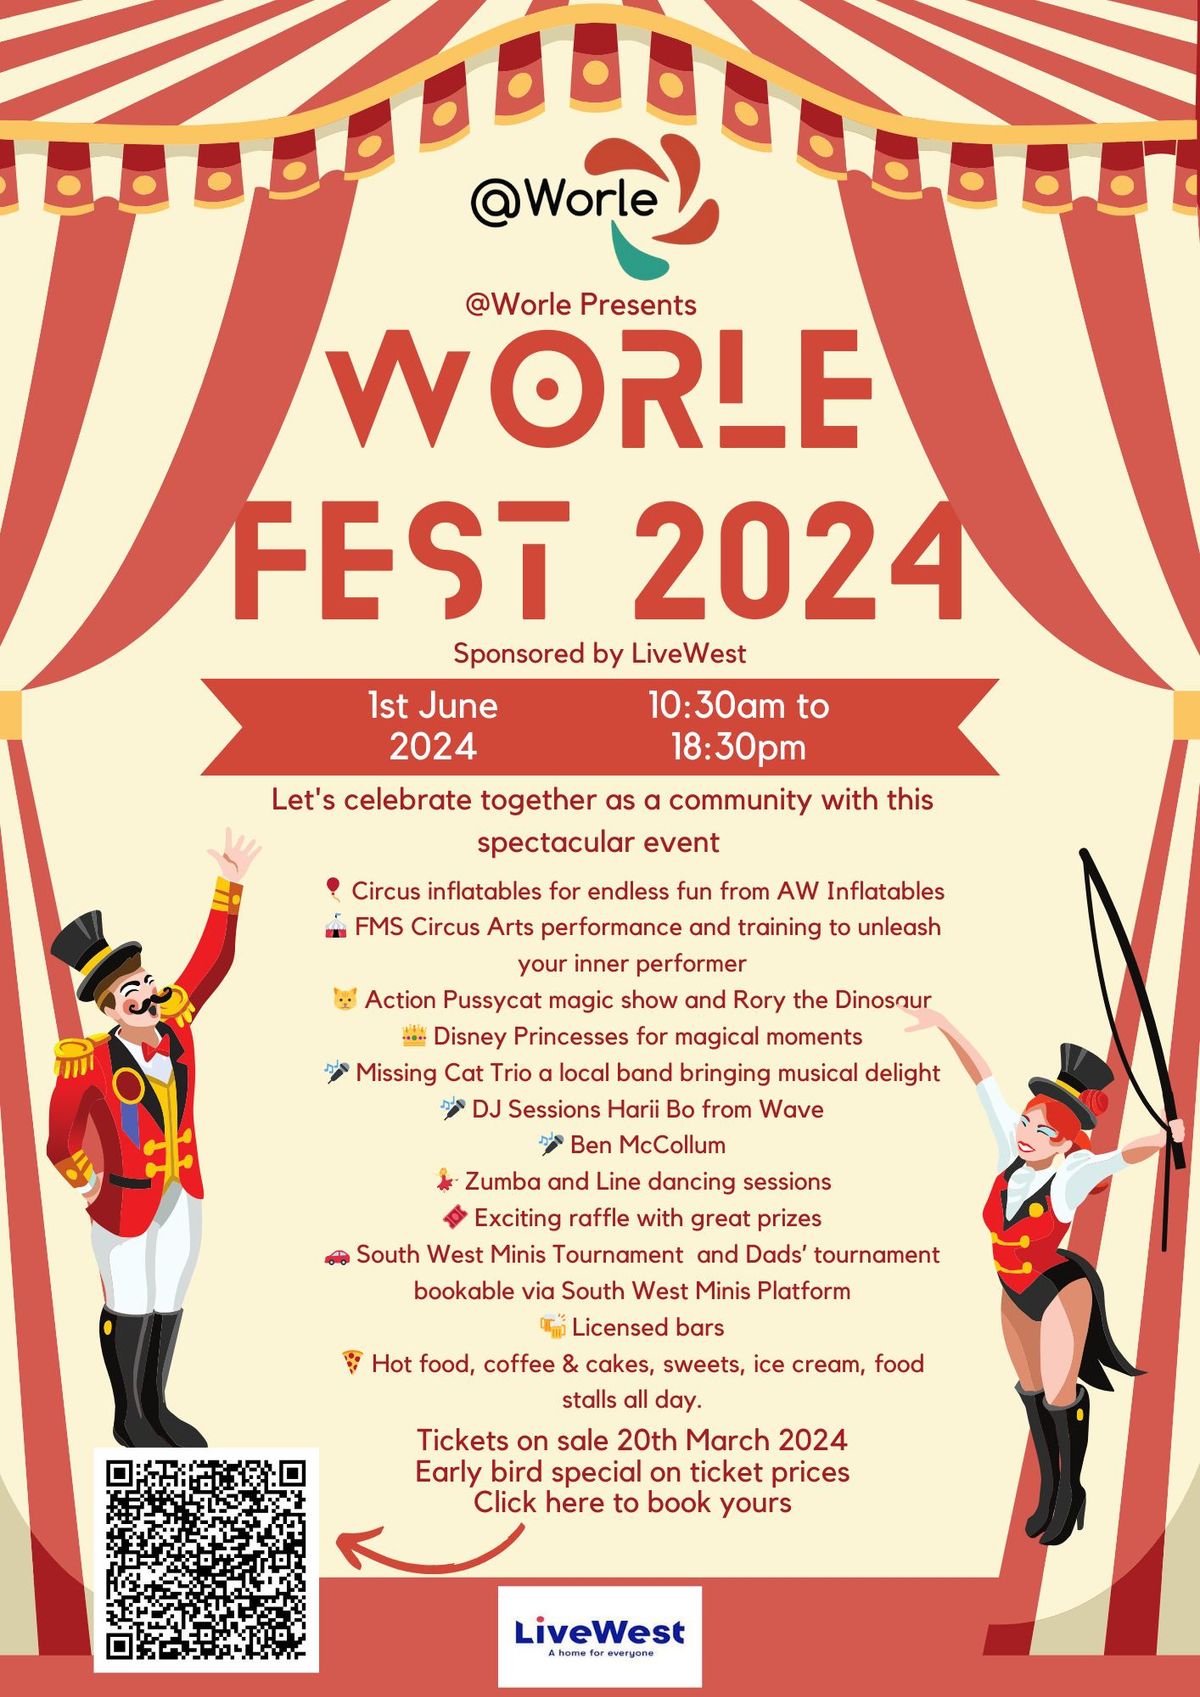 Worle Fest 2024